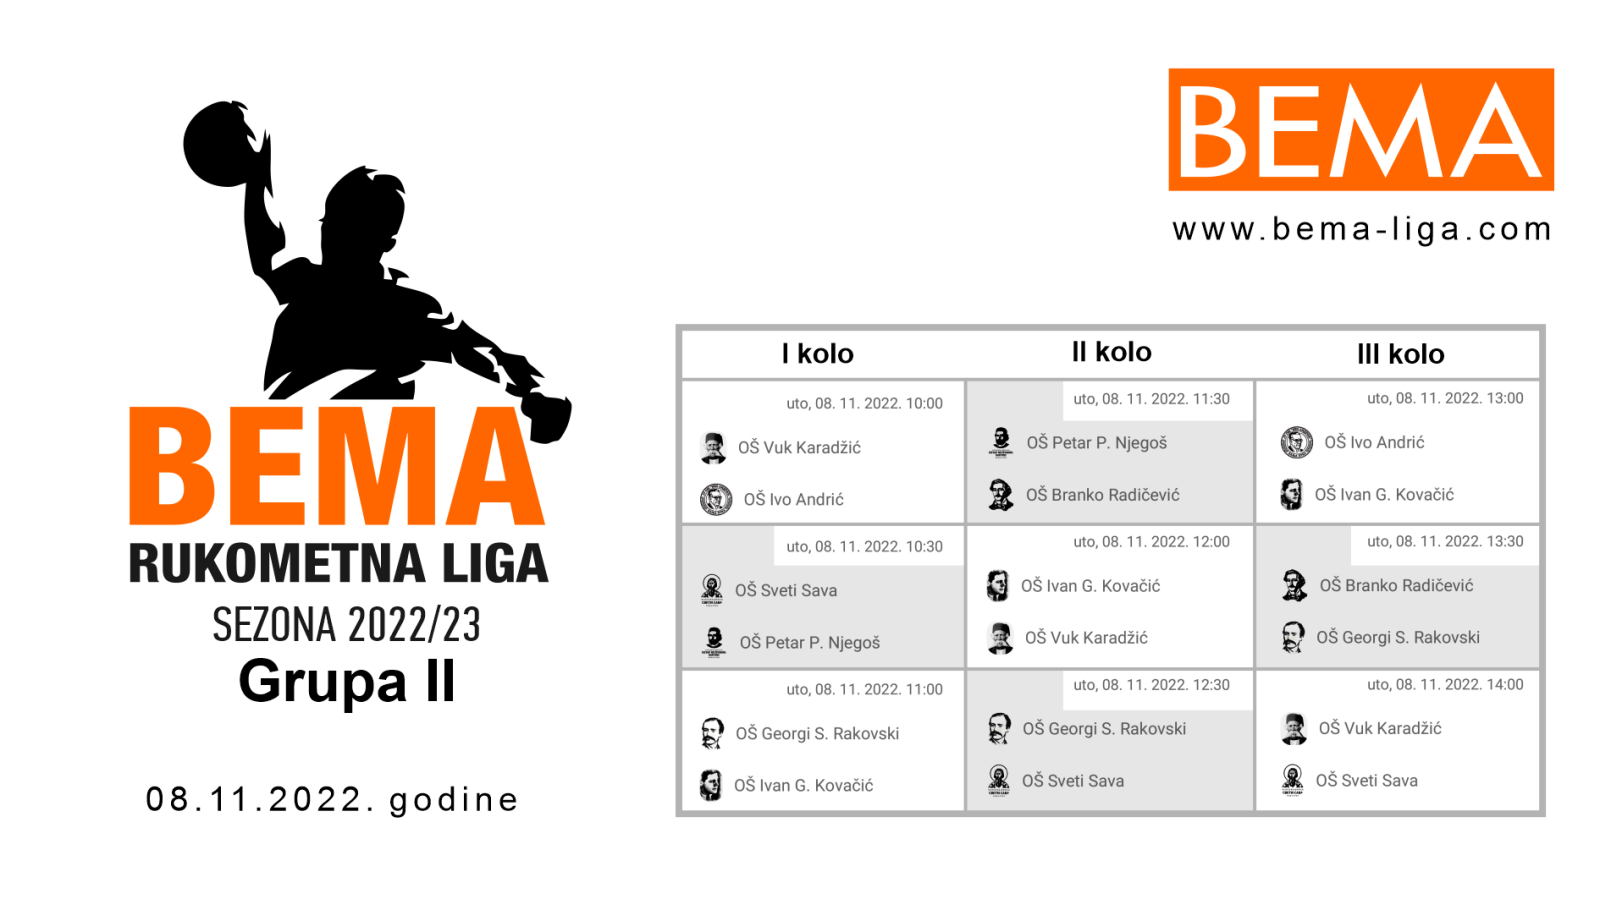 BEMA rukometna liga sezona 2022/23 Grupa 2